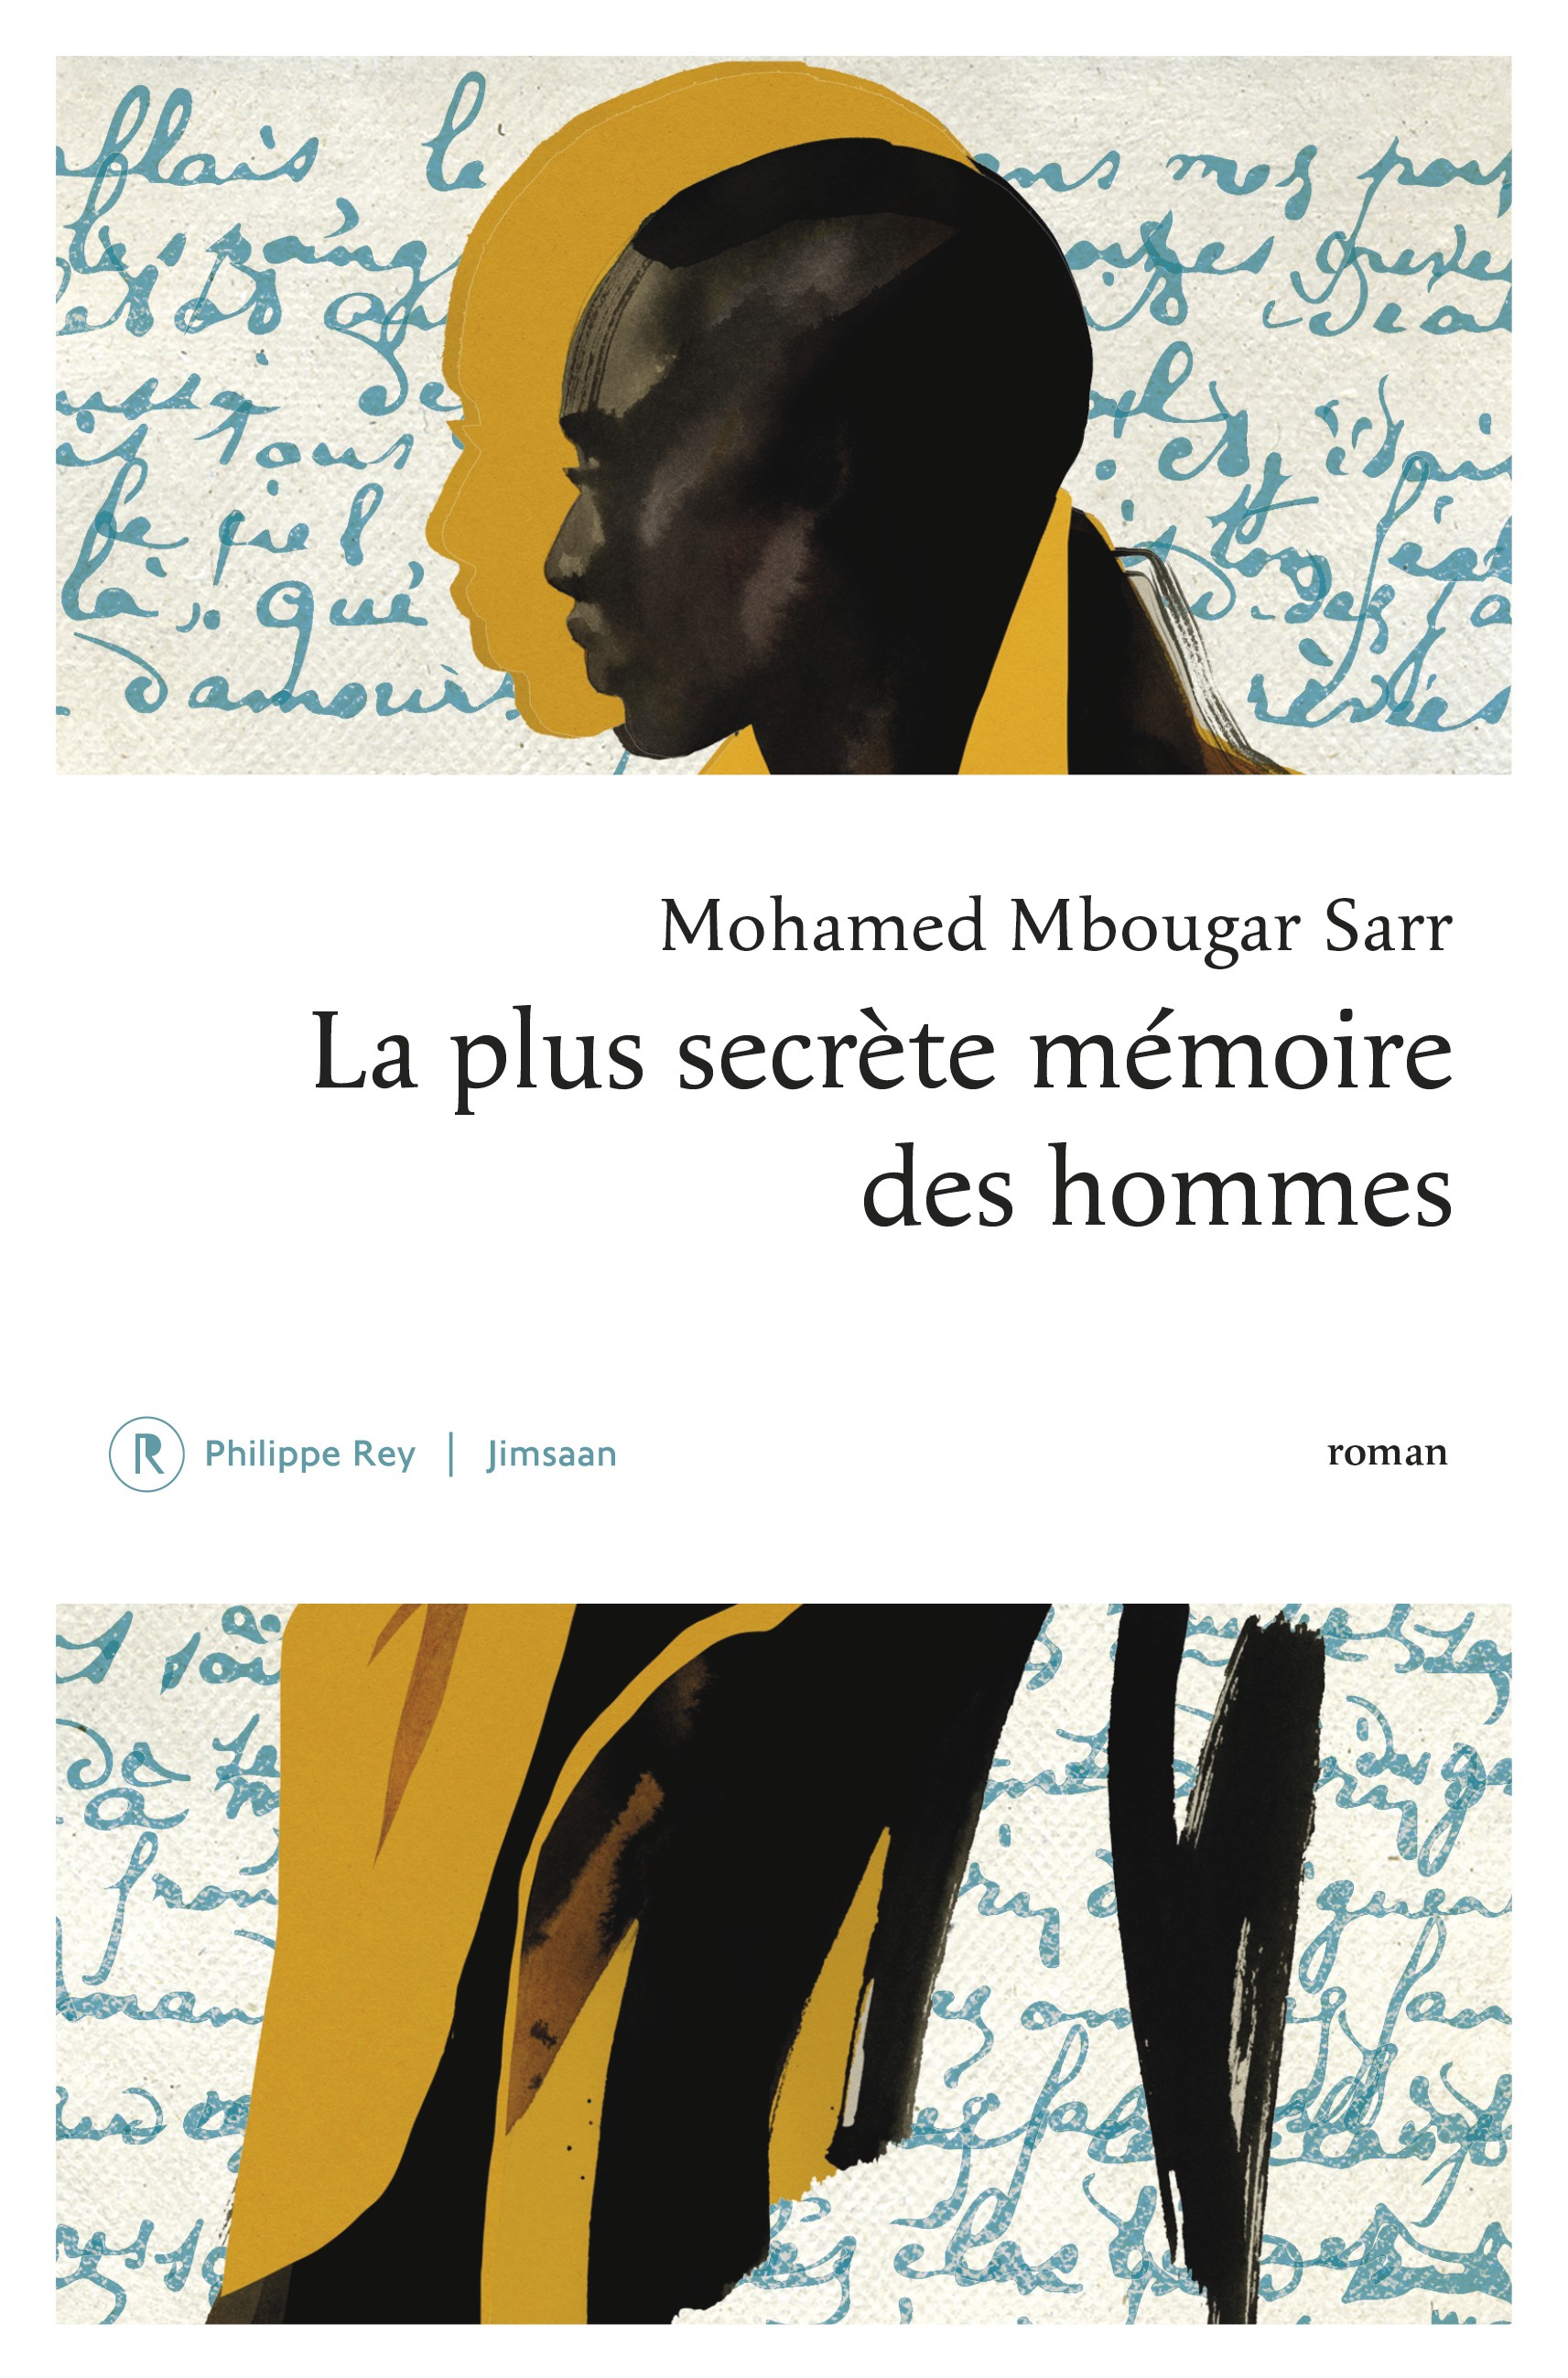 Mohamed Mbougar Sarr